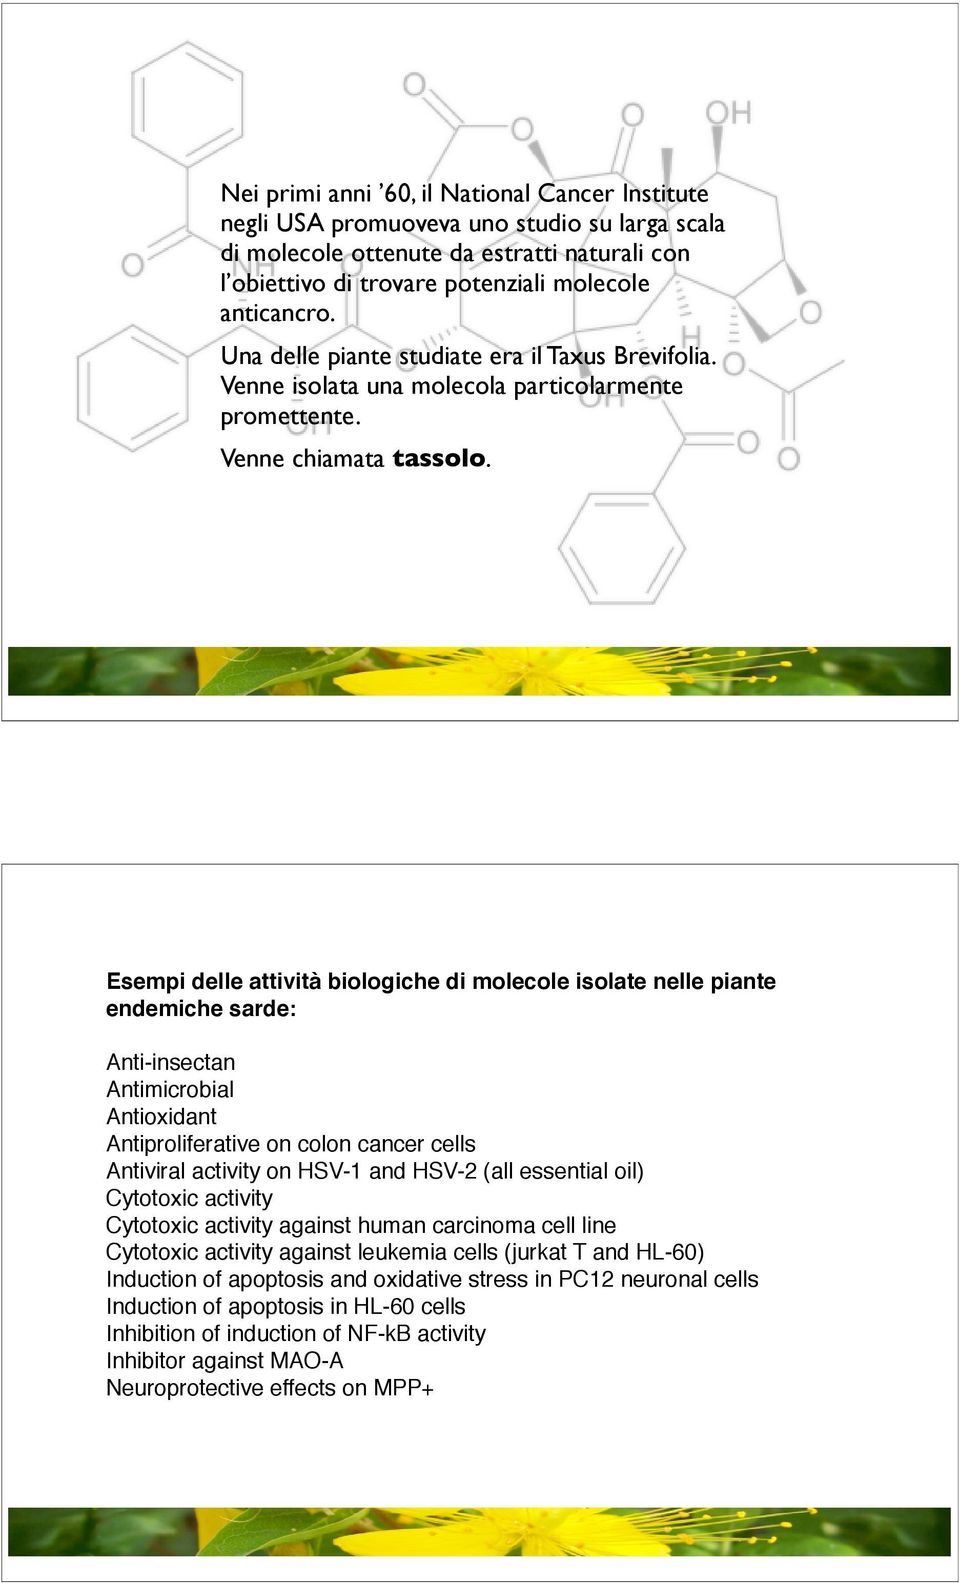 Esempi delle attività biologiche di molecole isolate nelle piante endemiche sarde: Anti-insectan Antimicrobial Antioxidant Antiproliferative on colon cancer cells Antiviral activity on HSV-1 and